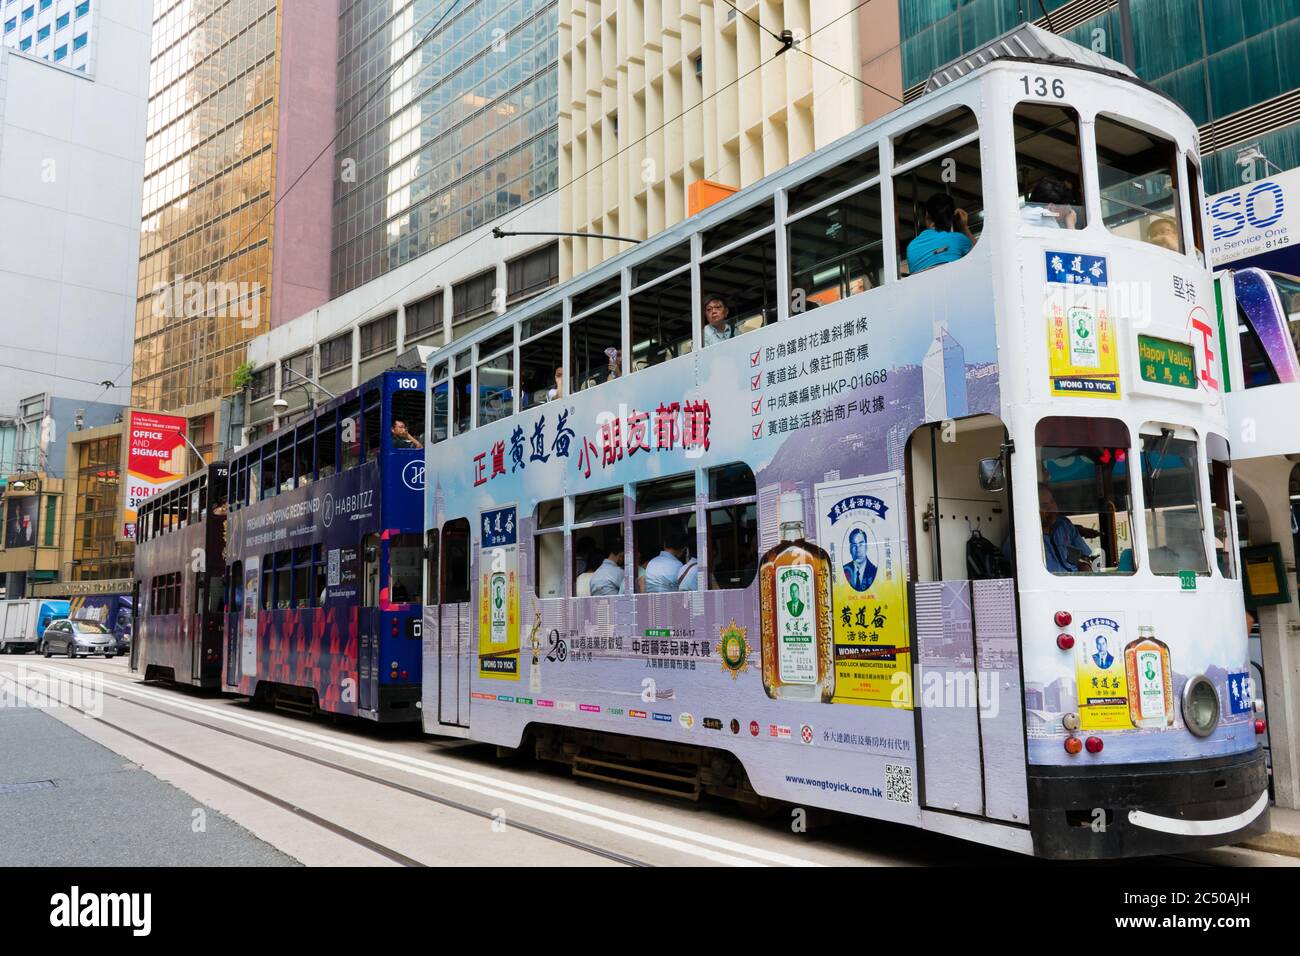 Tranvías eléctricos en el Distrito Central. La isla de Hong Kong está cubierta de anuncios coloridos y rodeada de rascacielos. Foto de stock